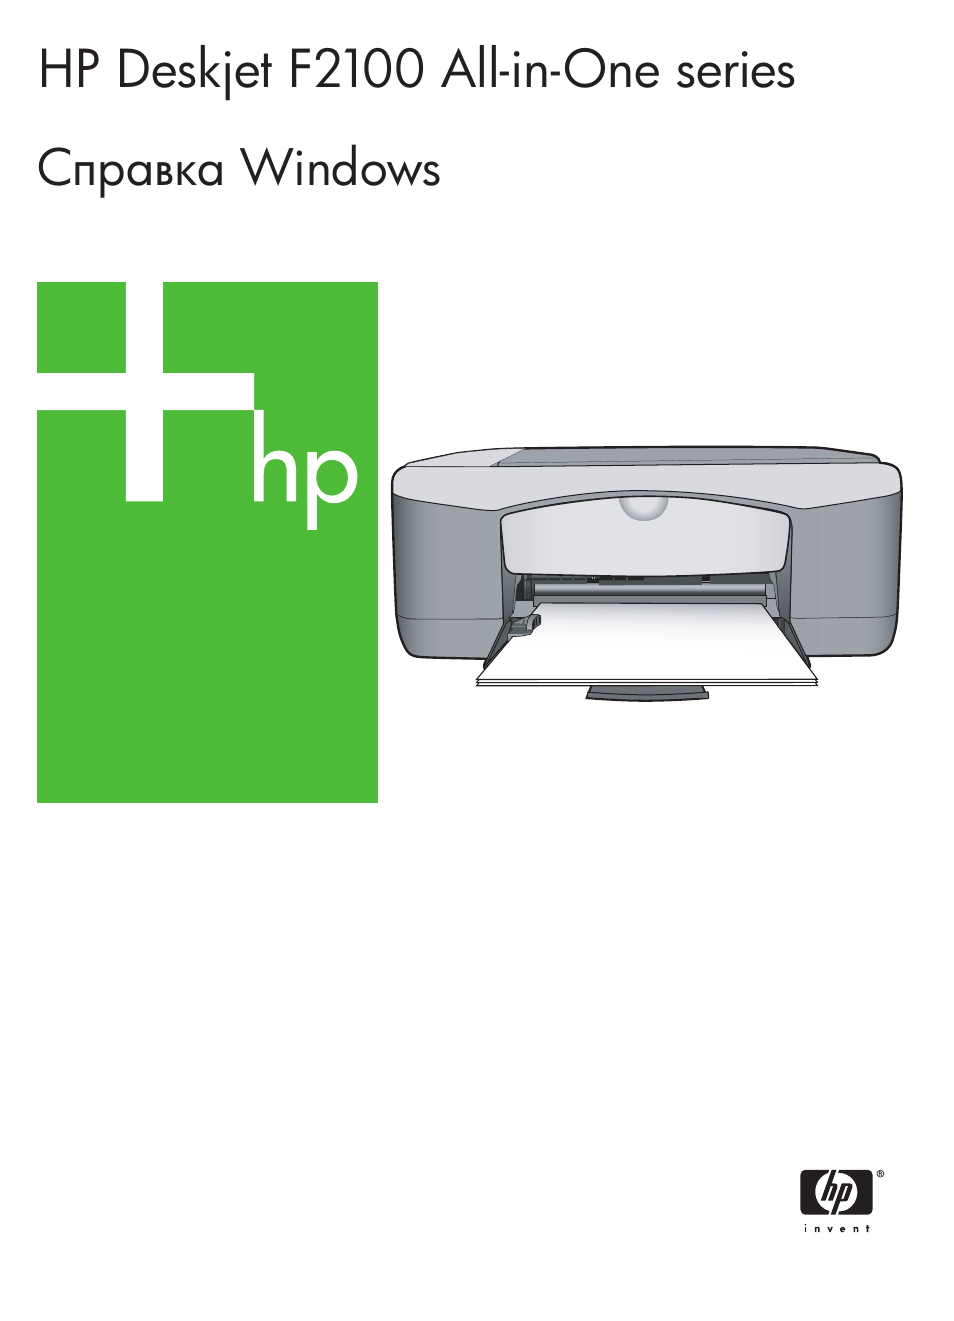 Принтера hp deskjet f2180 инструкция